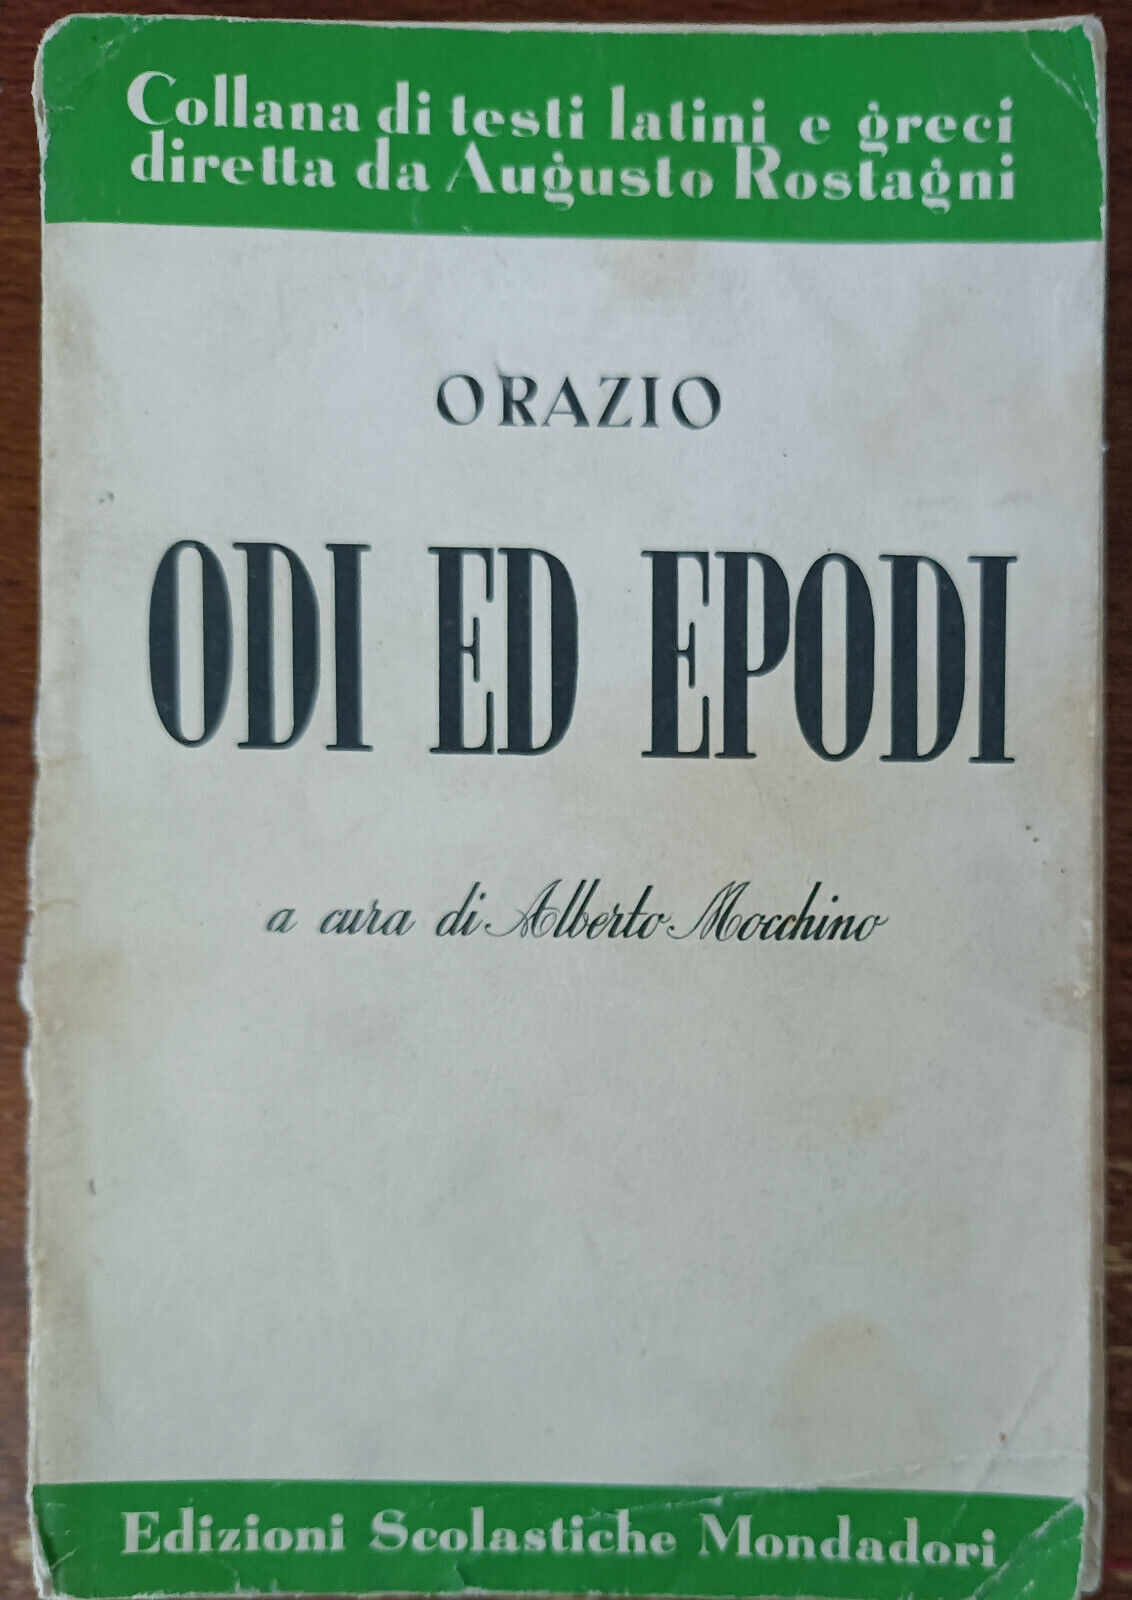 Odi ed epodi - Orazio - Edizioni scolastiche mondadori, 1964 - A